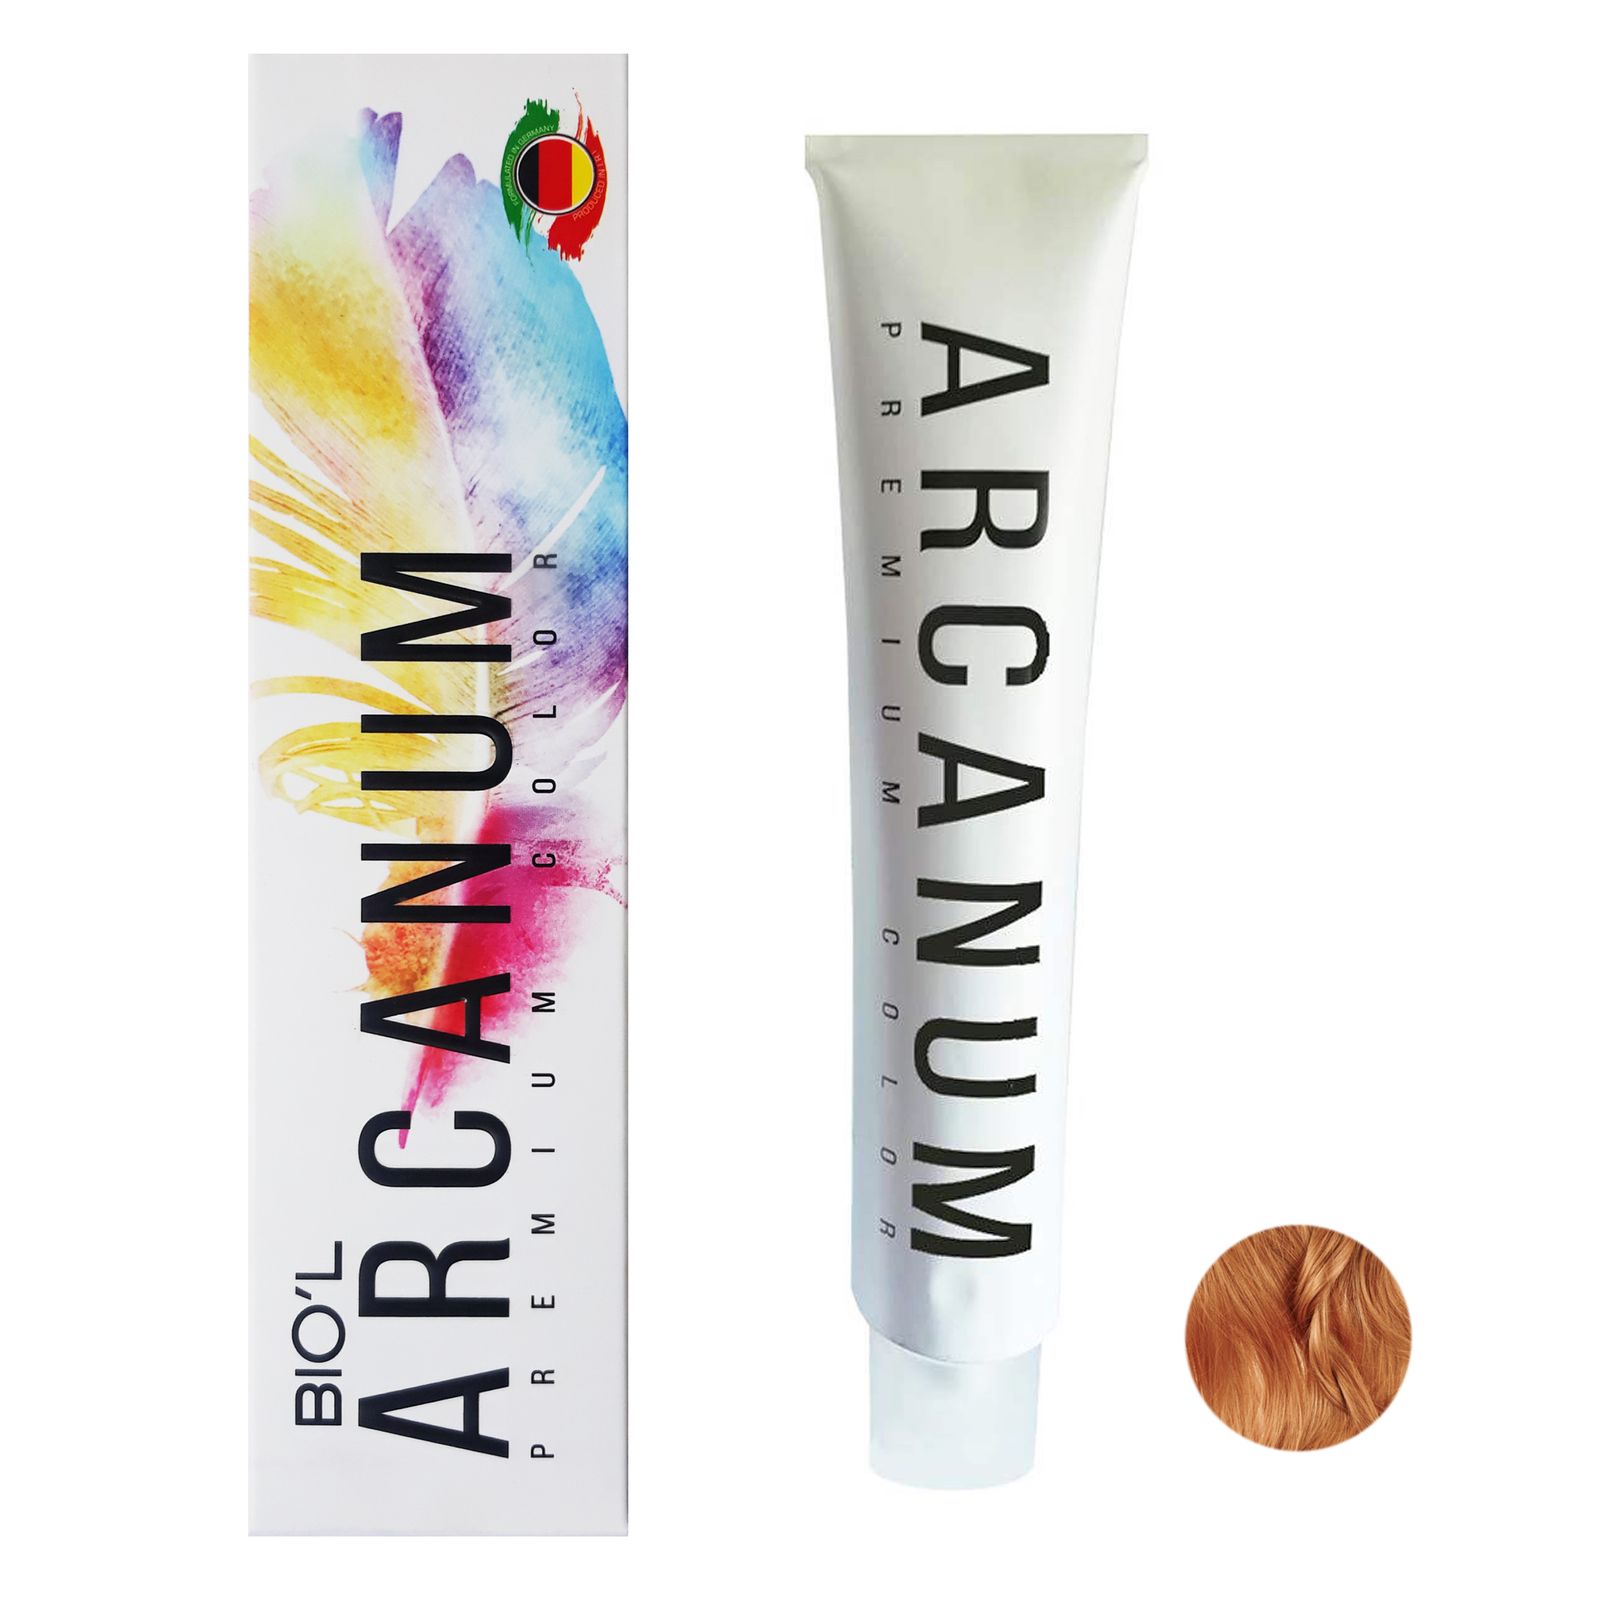  رنگ مو بیول مدل Arcanum شماره 8.84 حجم 120 میلی لیتر رنگ بلوند شکلات پرتغالی روشن -  - 2